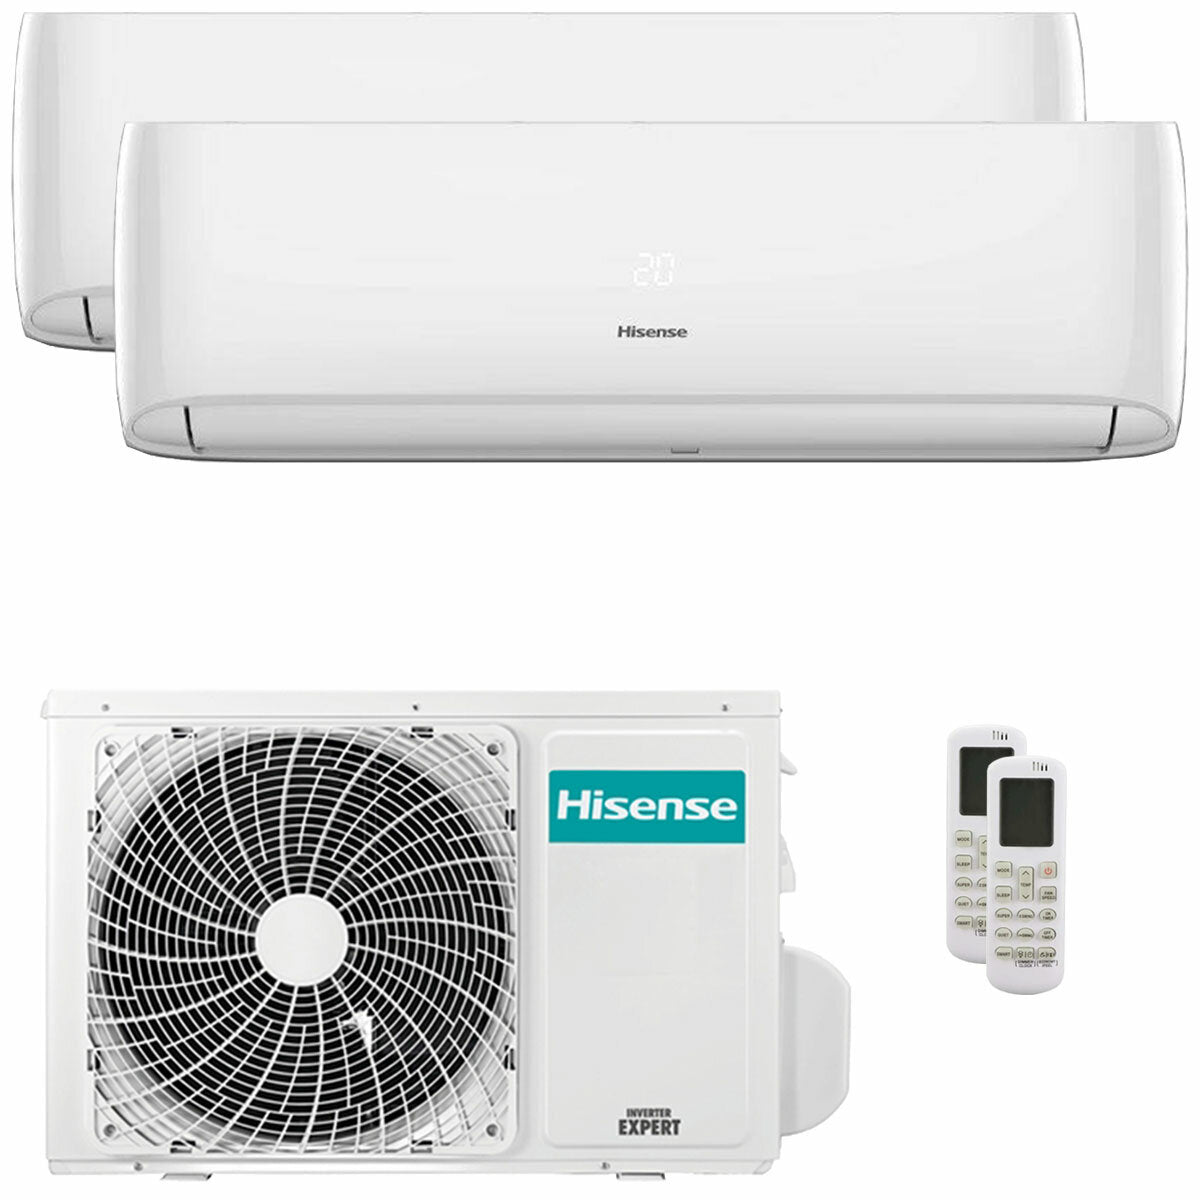 Hisense Hi-Comfort climatiseur double split 7000+7000 BTU onduleur A++ wifi unité extérieure 5,5 kW